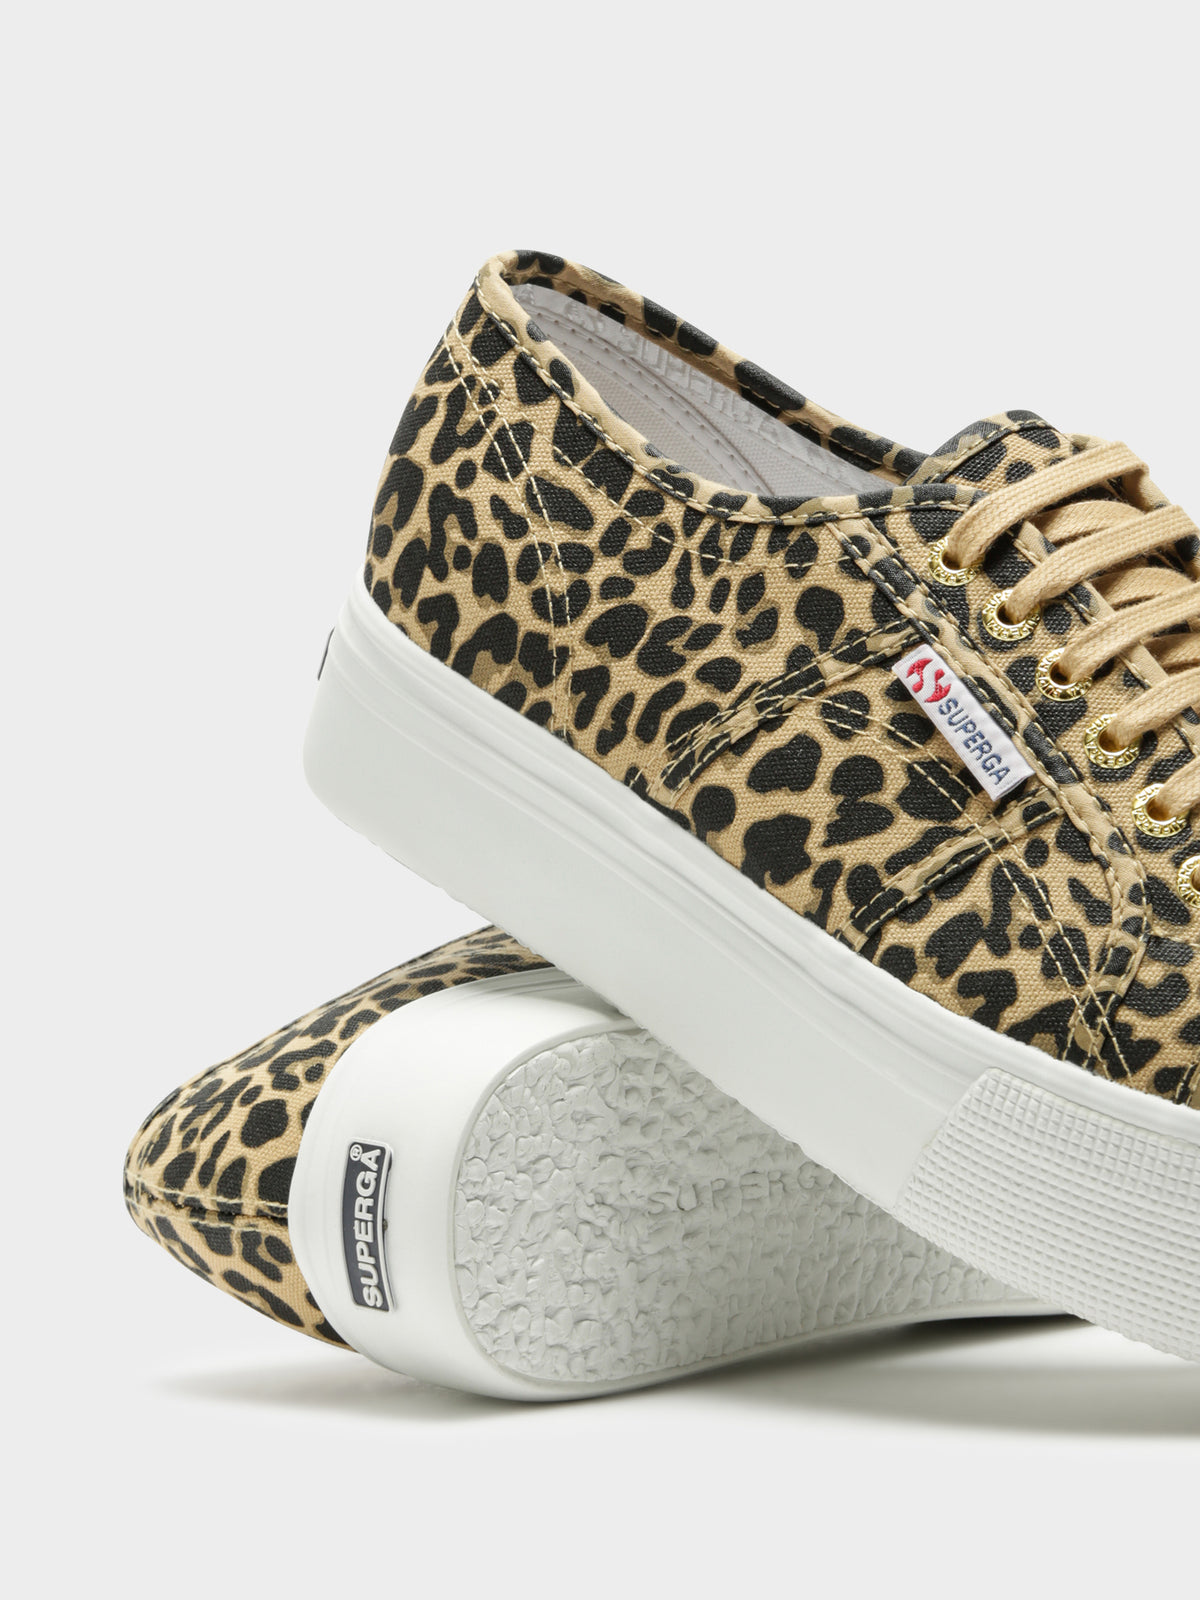 Womens 2790 Fancotw Platform Sneakers in Leopard Print